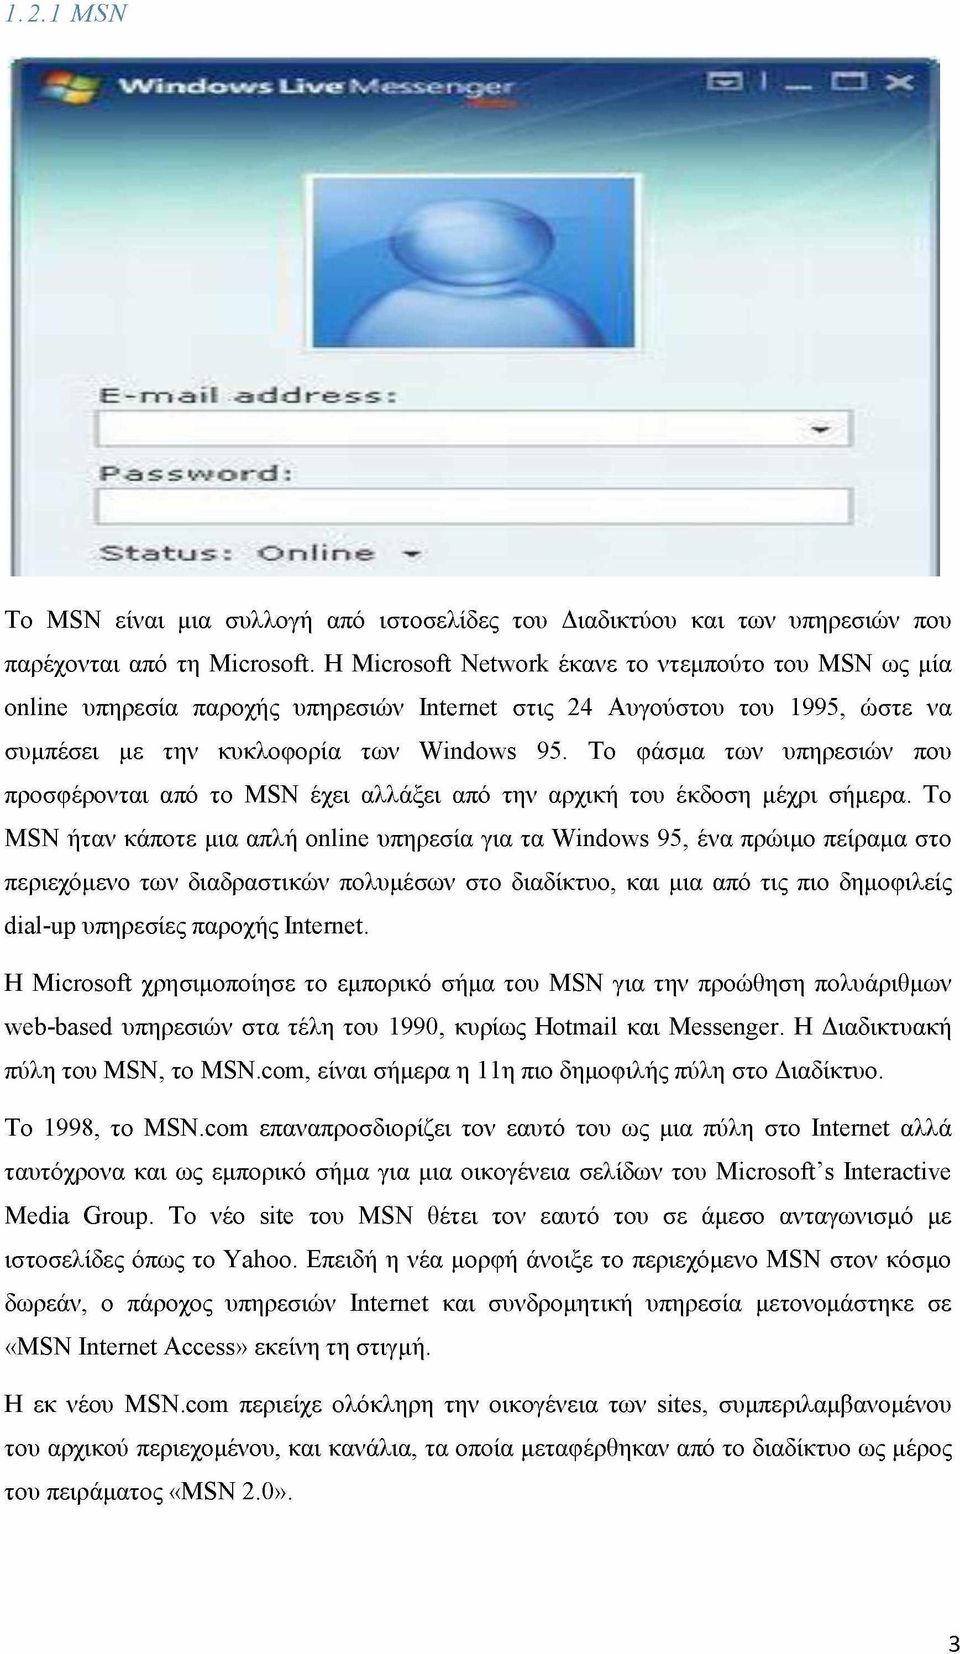 Το φάσμα των υπηρεσιών που προσφέρονται από το MSN έχει αλλάξει από την αρχική του έκδοση μέχρι σήμερα.